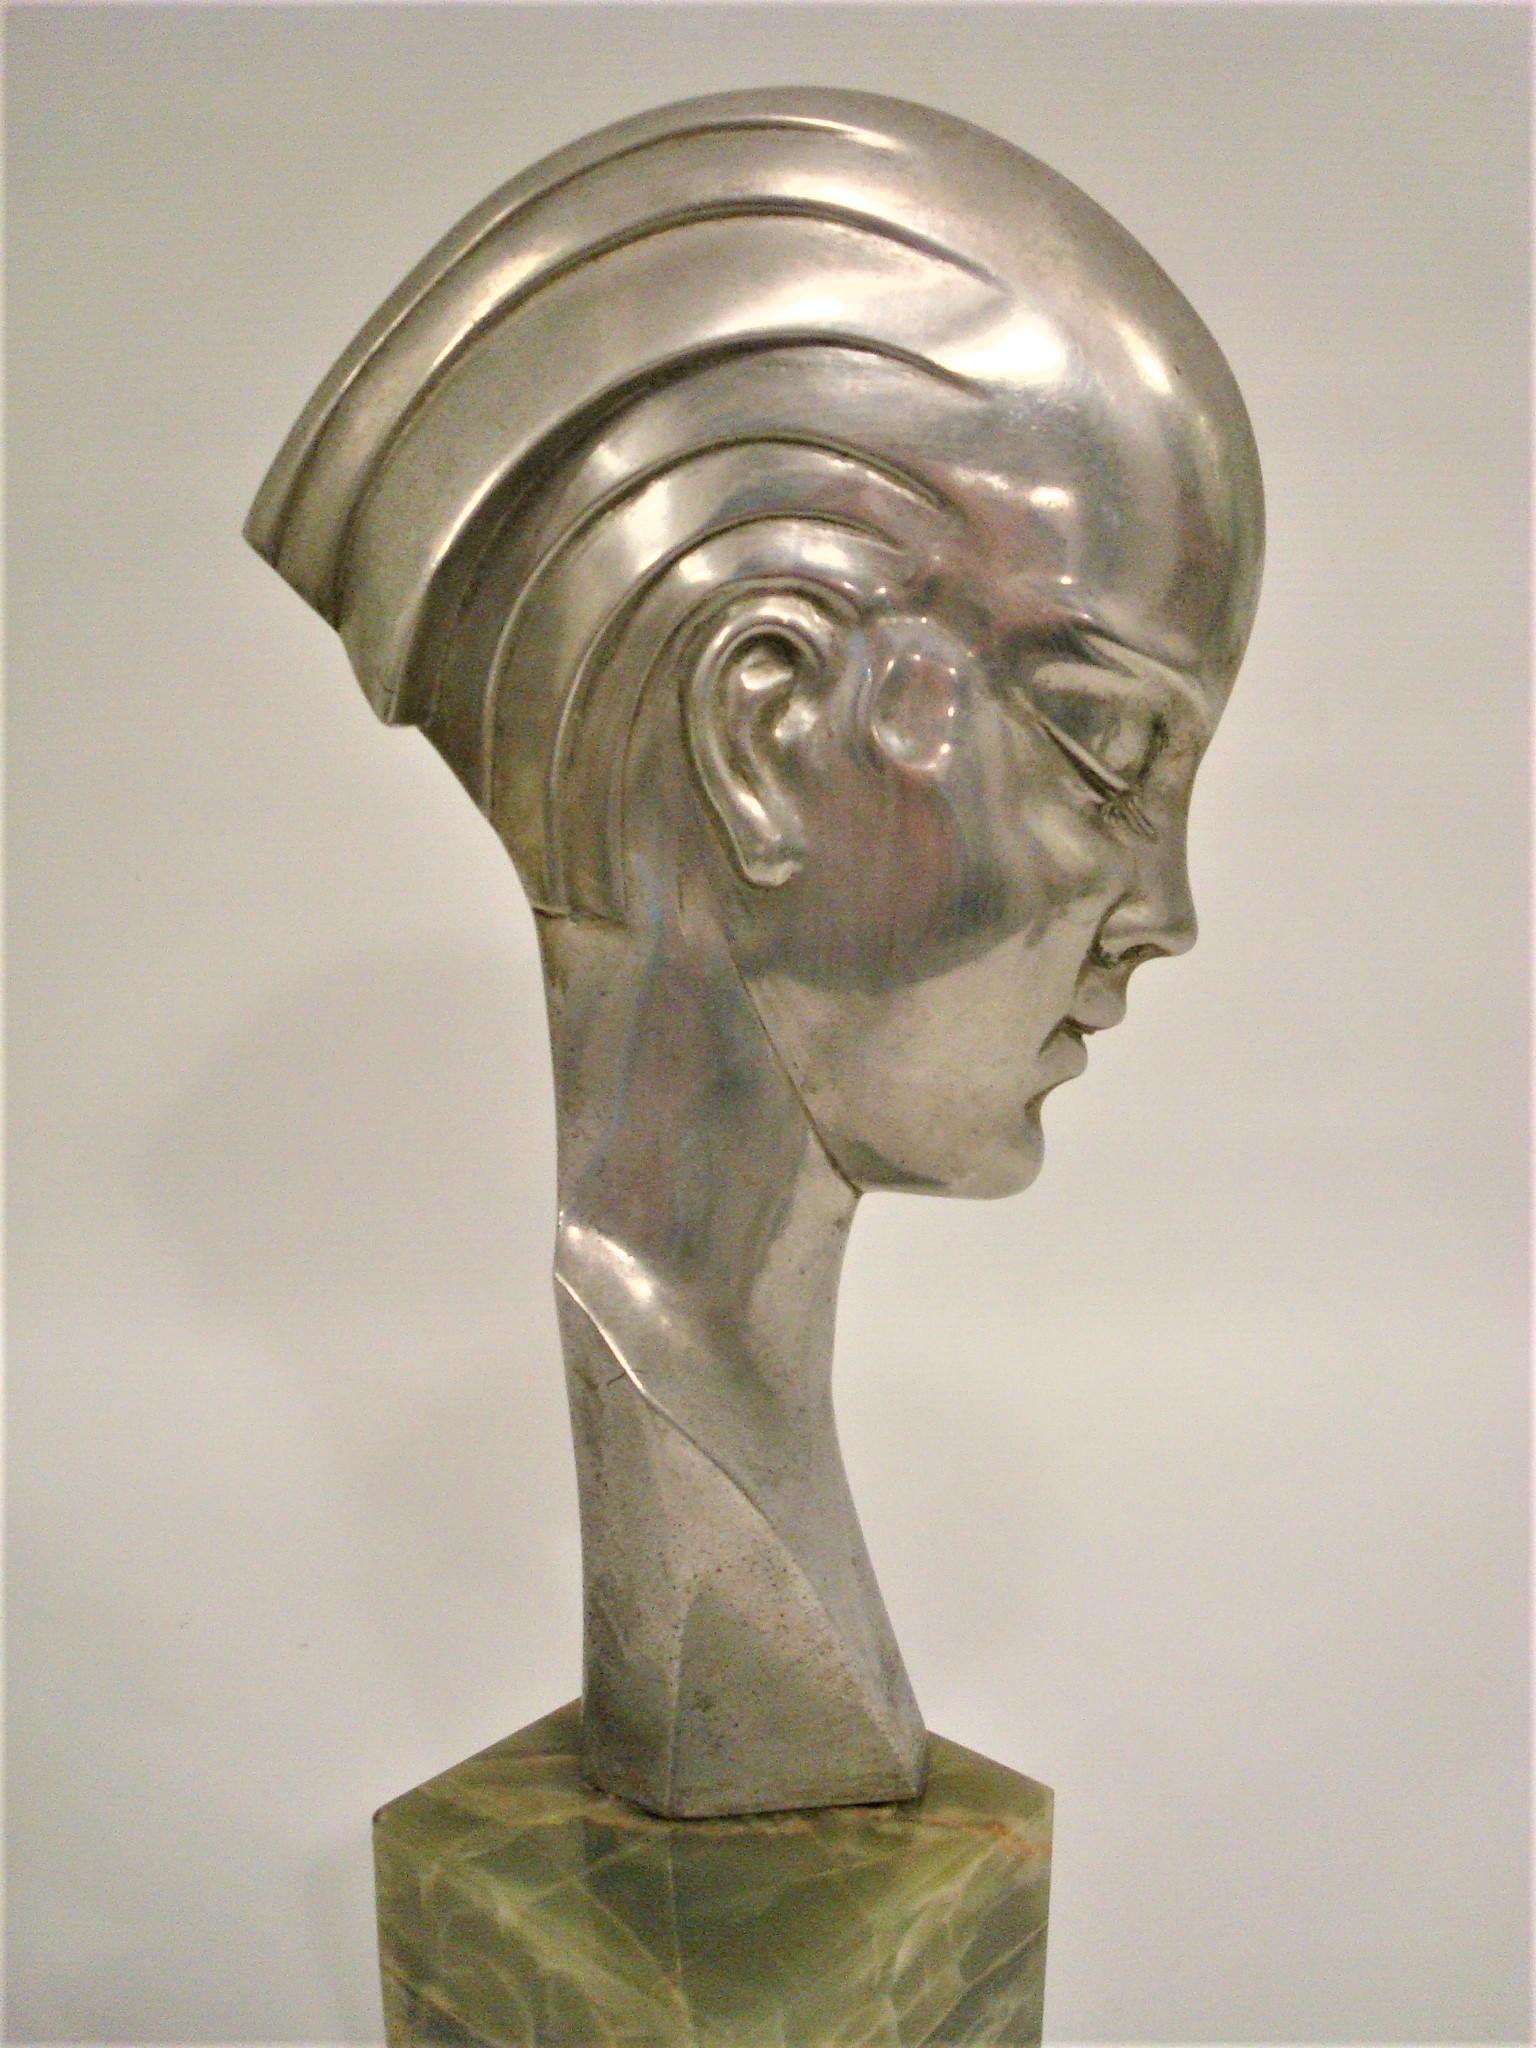 Buste en bronze Art Deco représentant une femme de profil.
Attribué à Guido Cacciapuoti.
Le bronze a une patine argentée et repose sur un socle en marbre vert.
Italie 1930-1940.